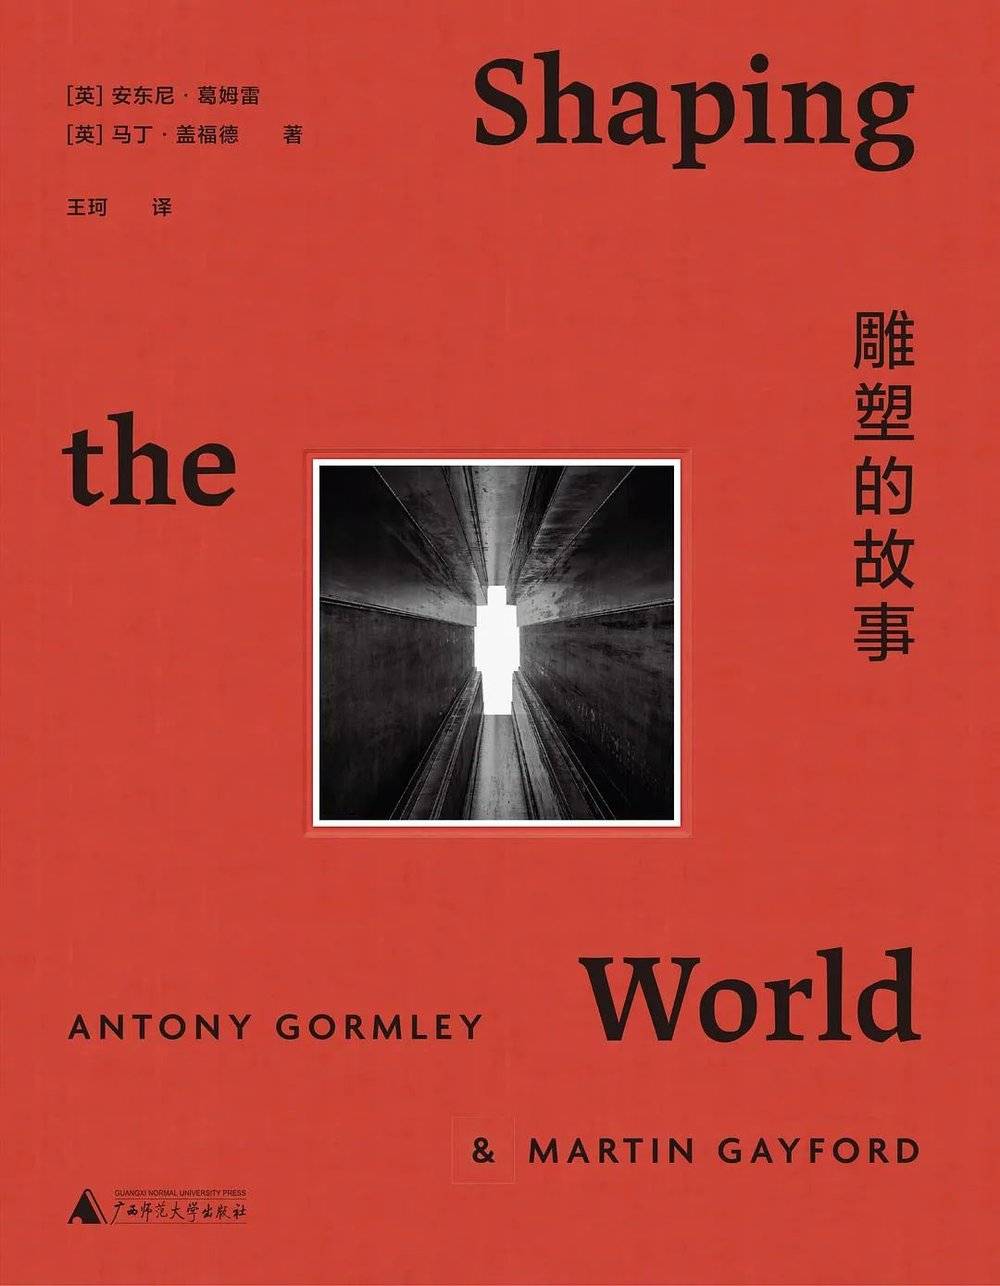 [英]安东尼·葛姆雷  [英]马丁·盖福德 著 理想国 | 广西师范大学出版社，2021-8